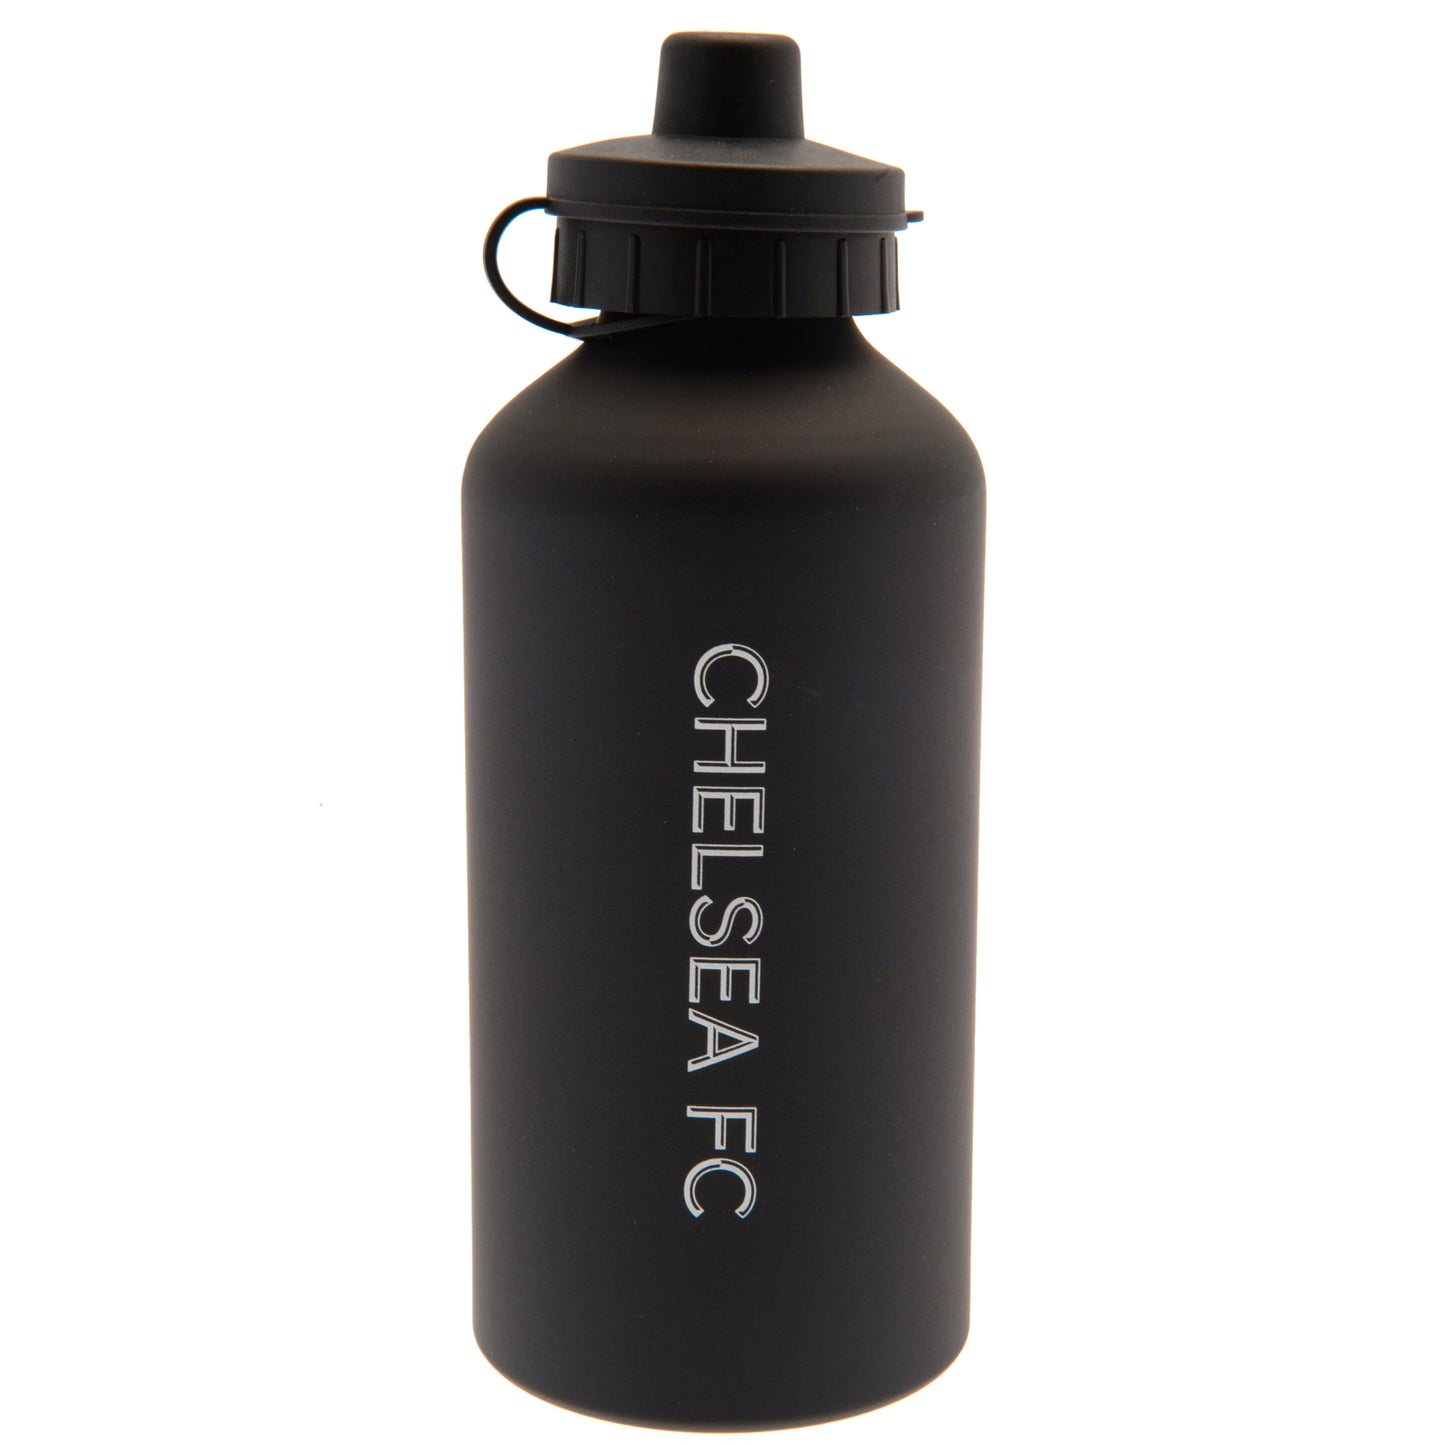 Chelsea FC Aluminium Drinks Bottle PH